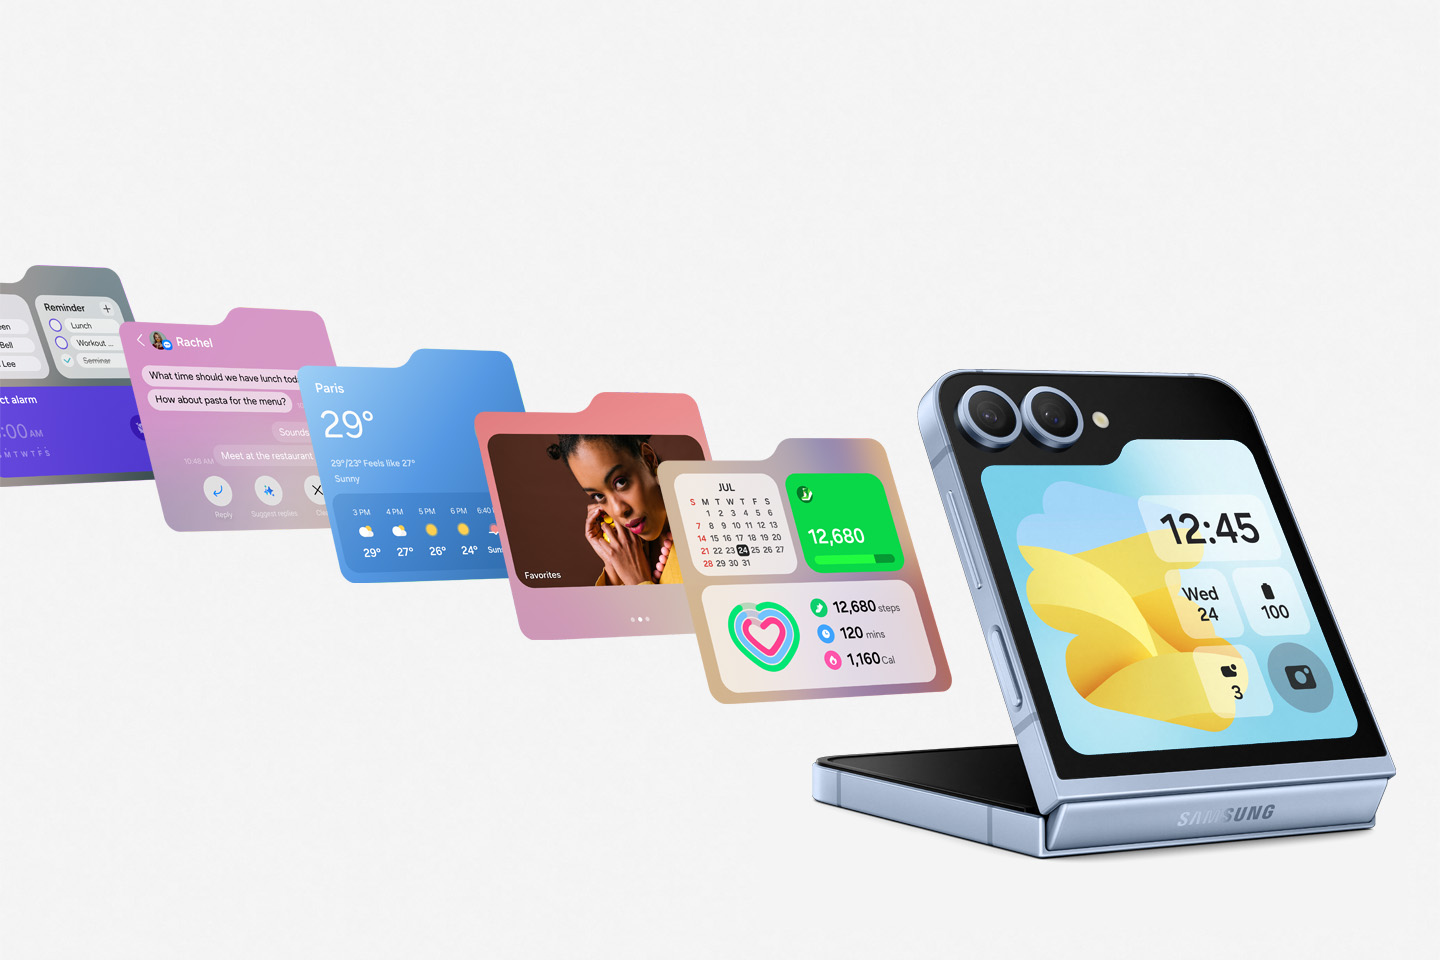 Samsung Galaxy Z Fold 6 i Z Flip6 oficjalnie. Otwórz się na wyższy poziom Galaxy AI